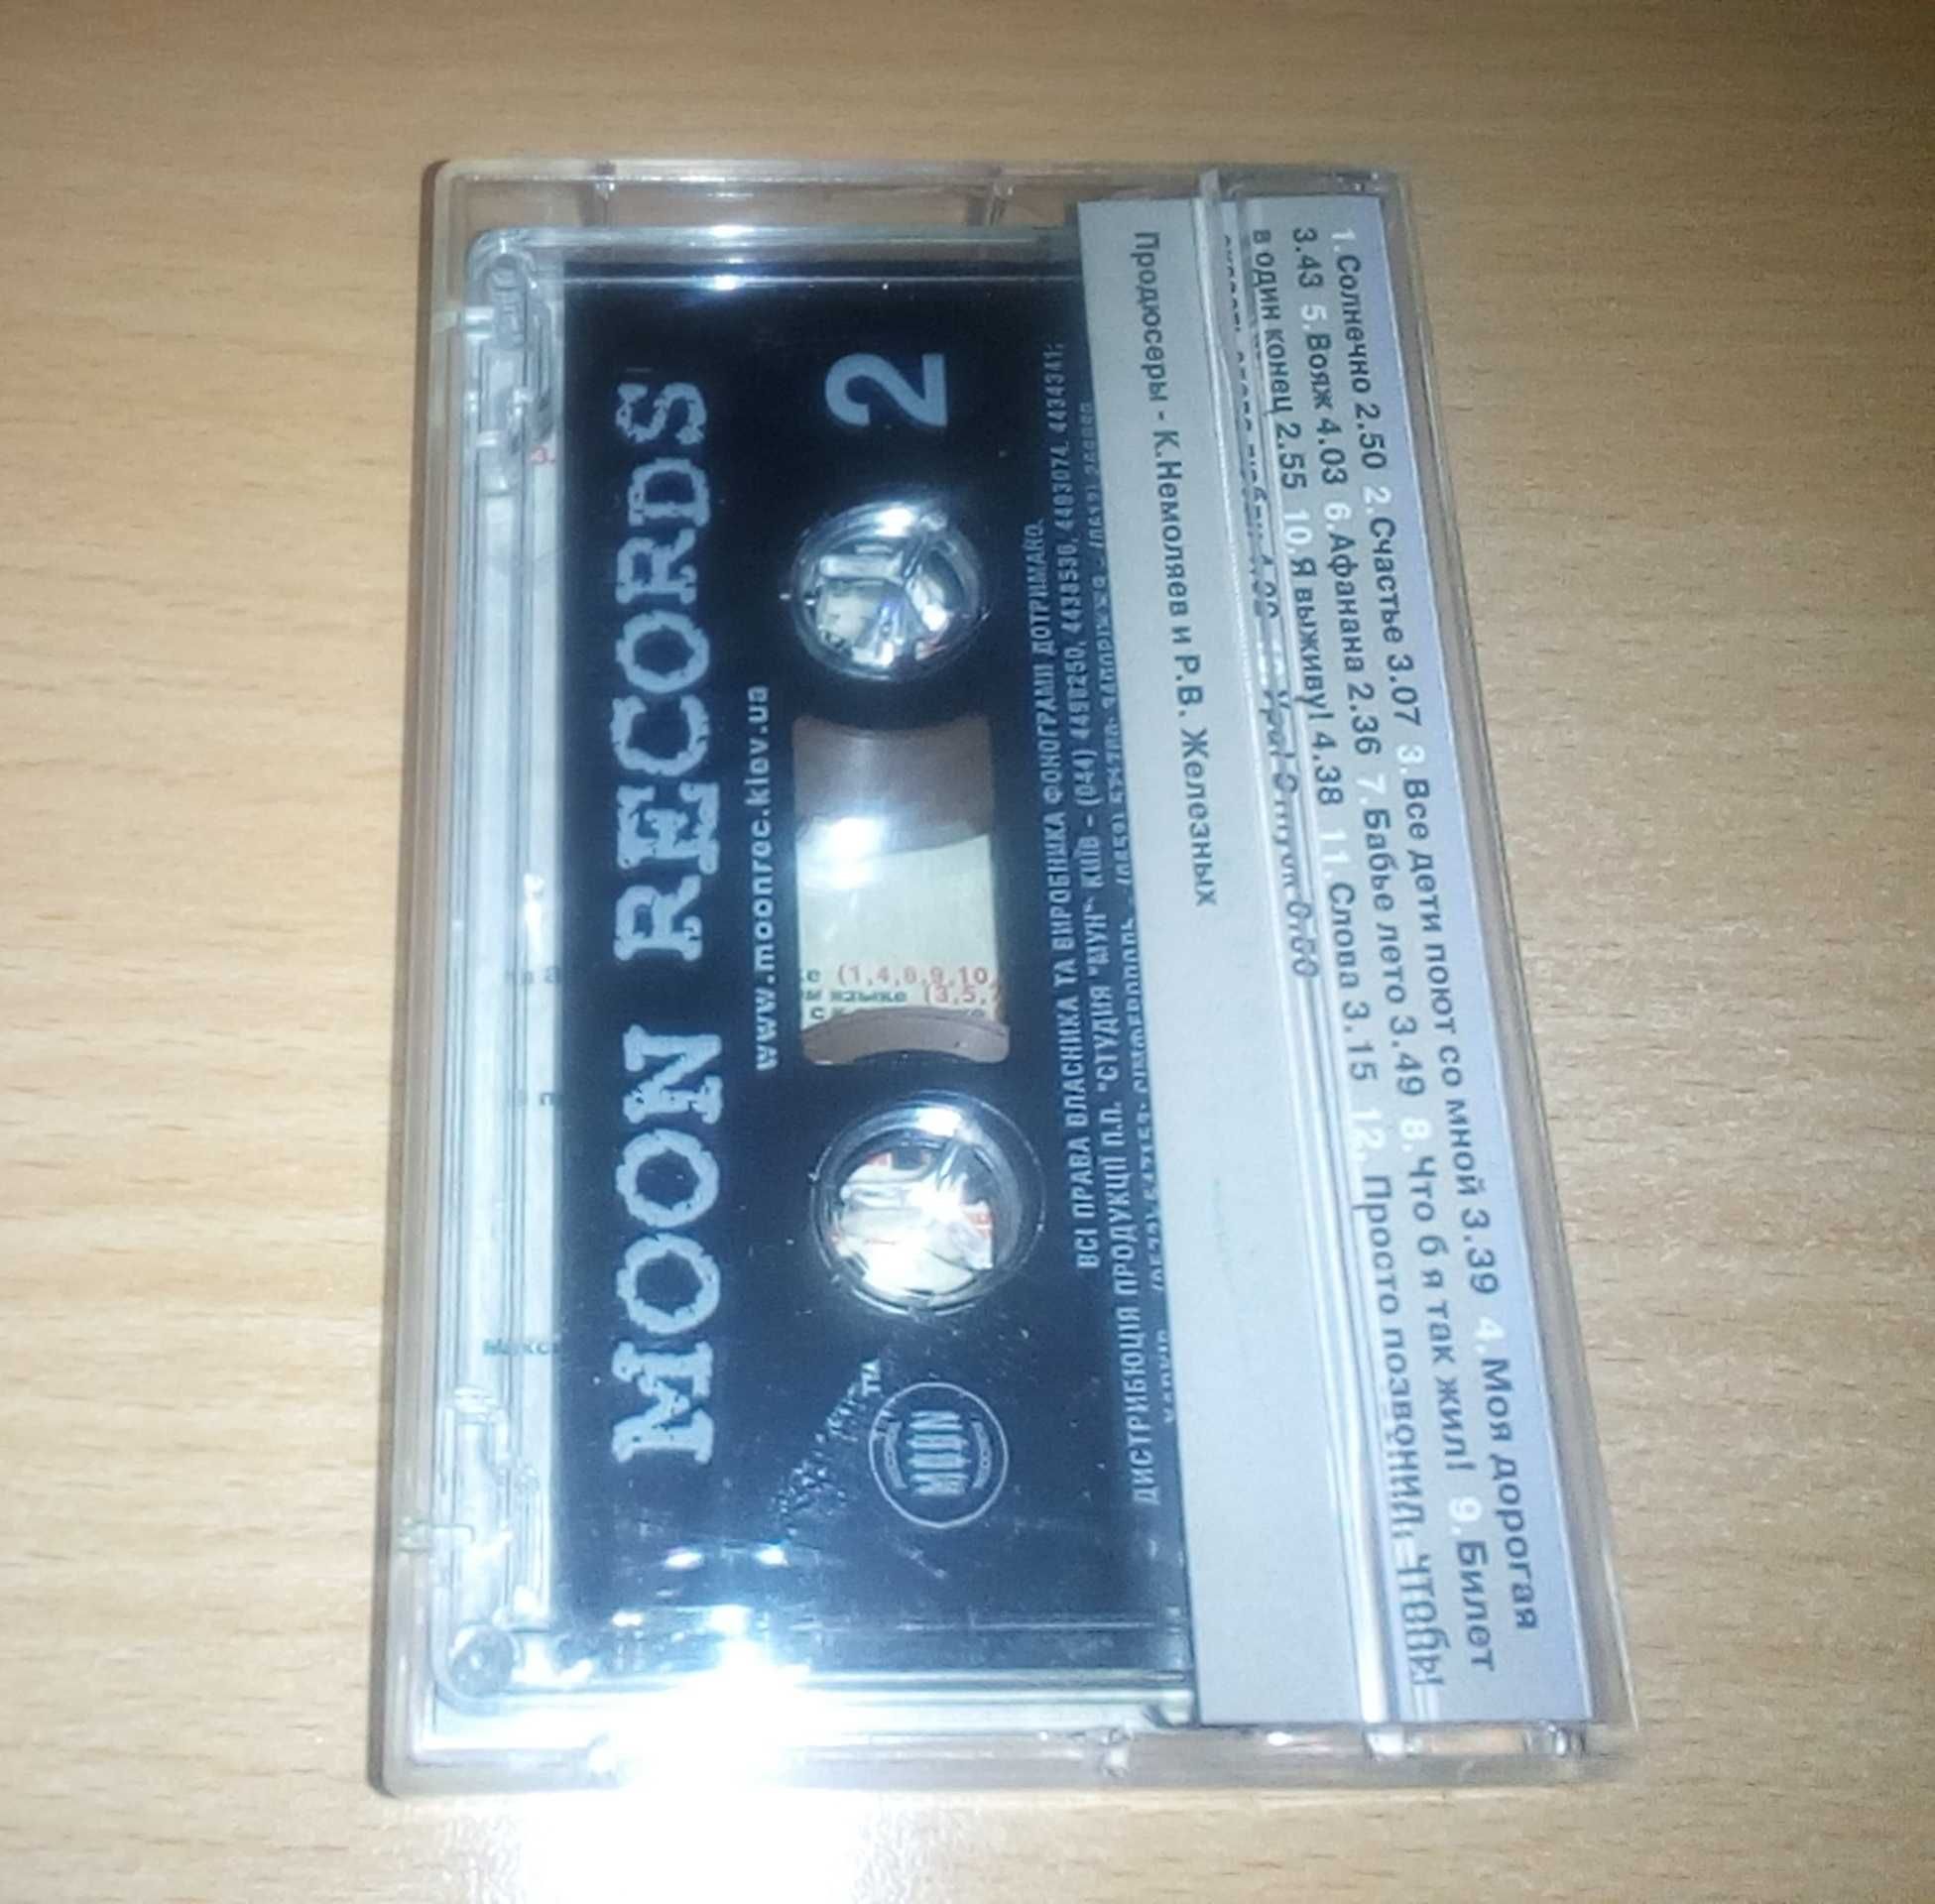 Коллекция кассет группы "Бони неМ"